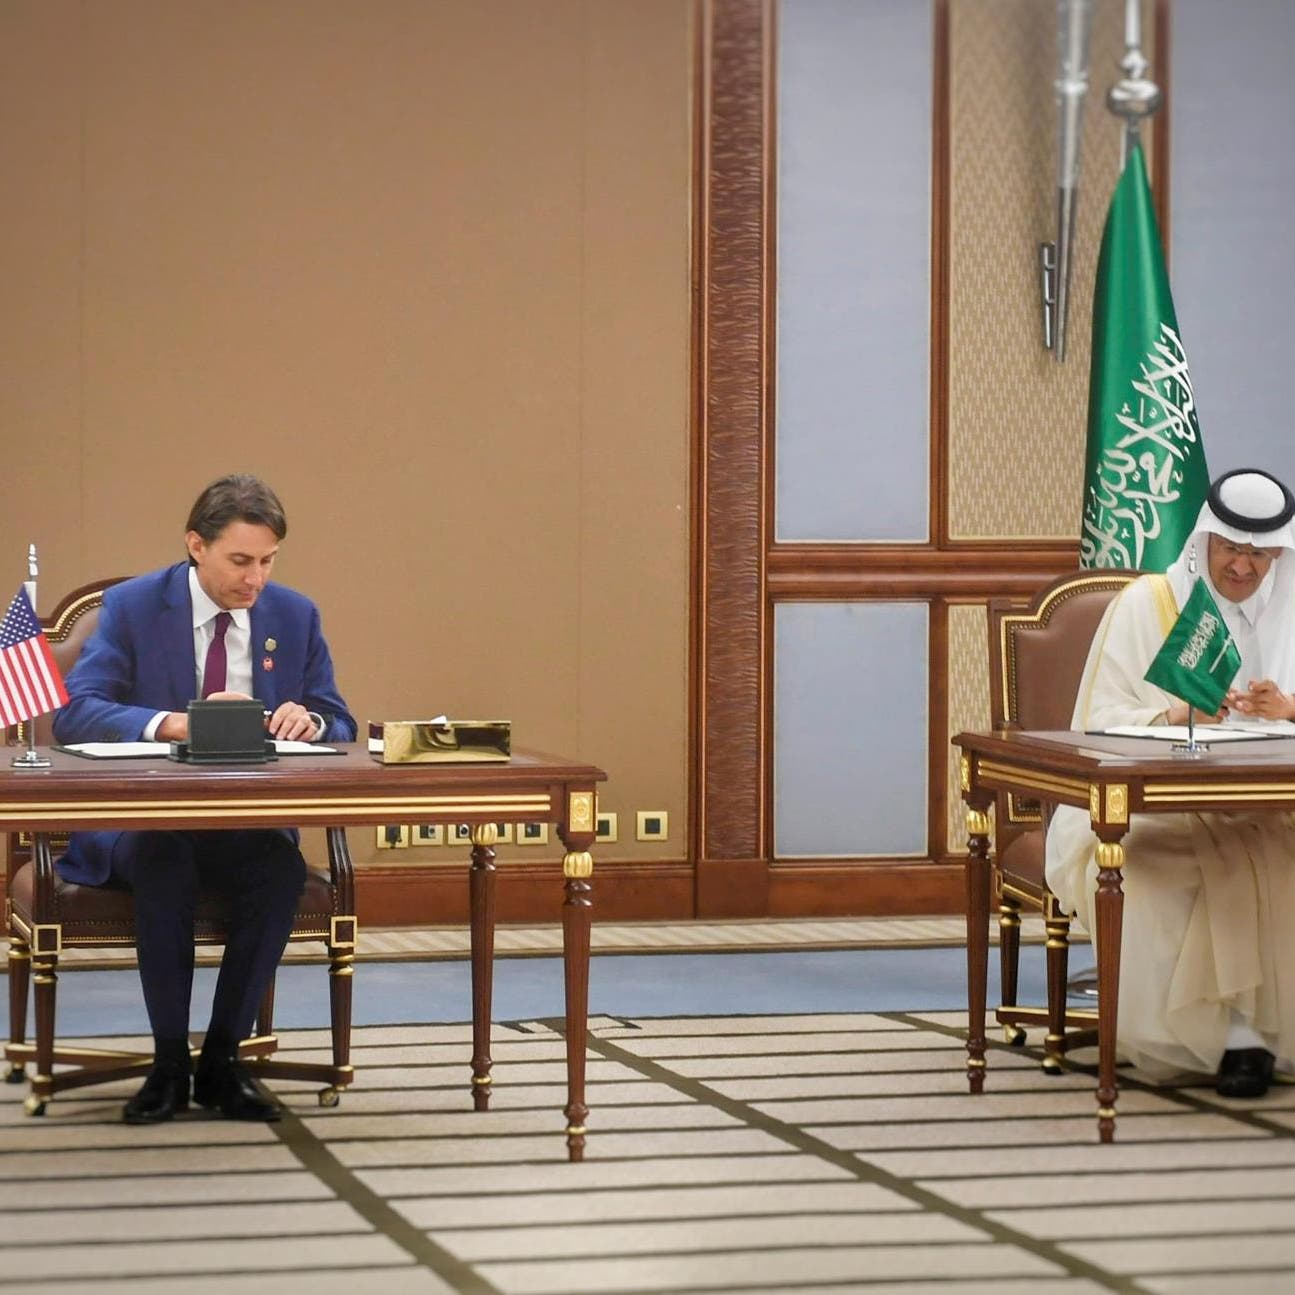 السعودية والولايات المتحدة توقعان 18 اتفاقية ومذكرات تعاون